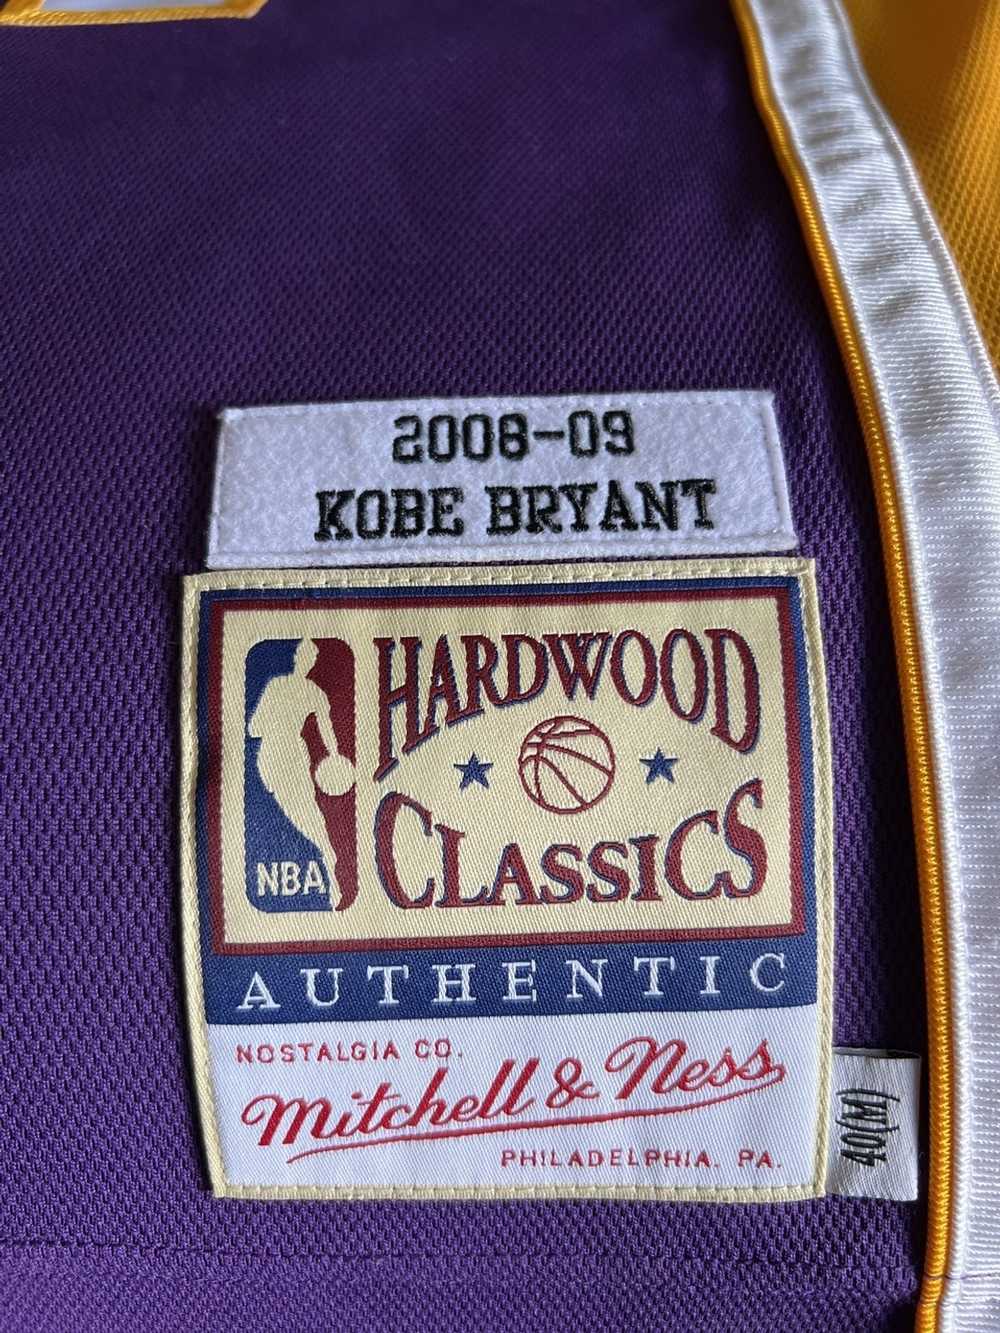 NBA Lakers Kobe Bryant 08-09 - image 6